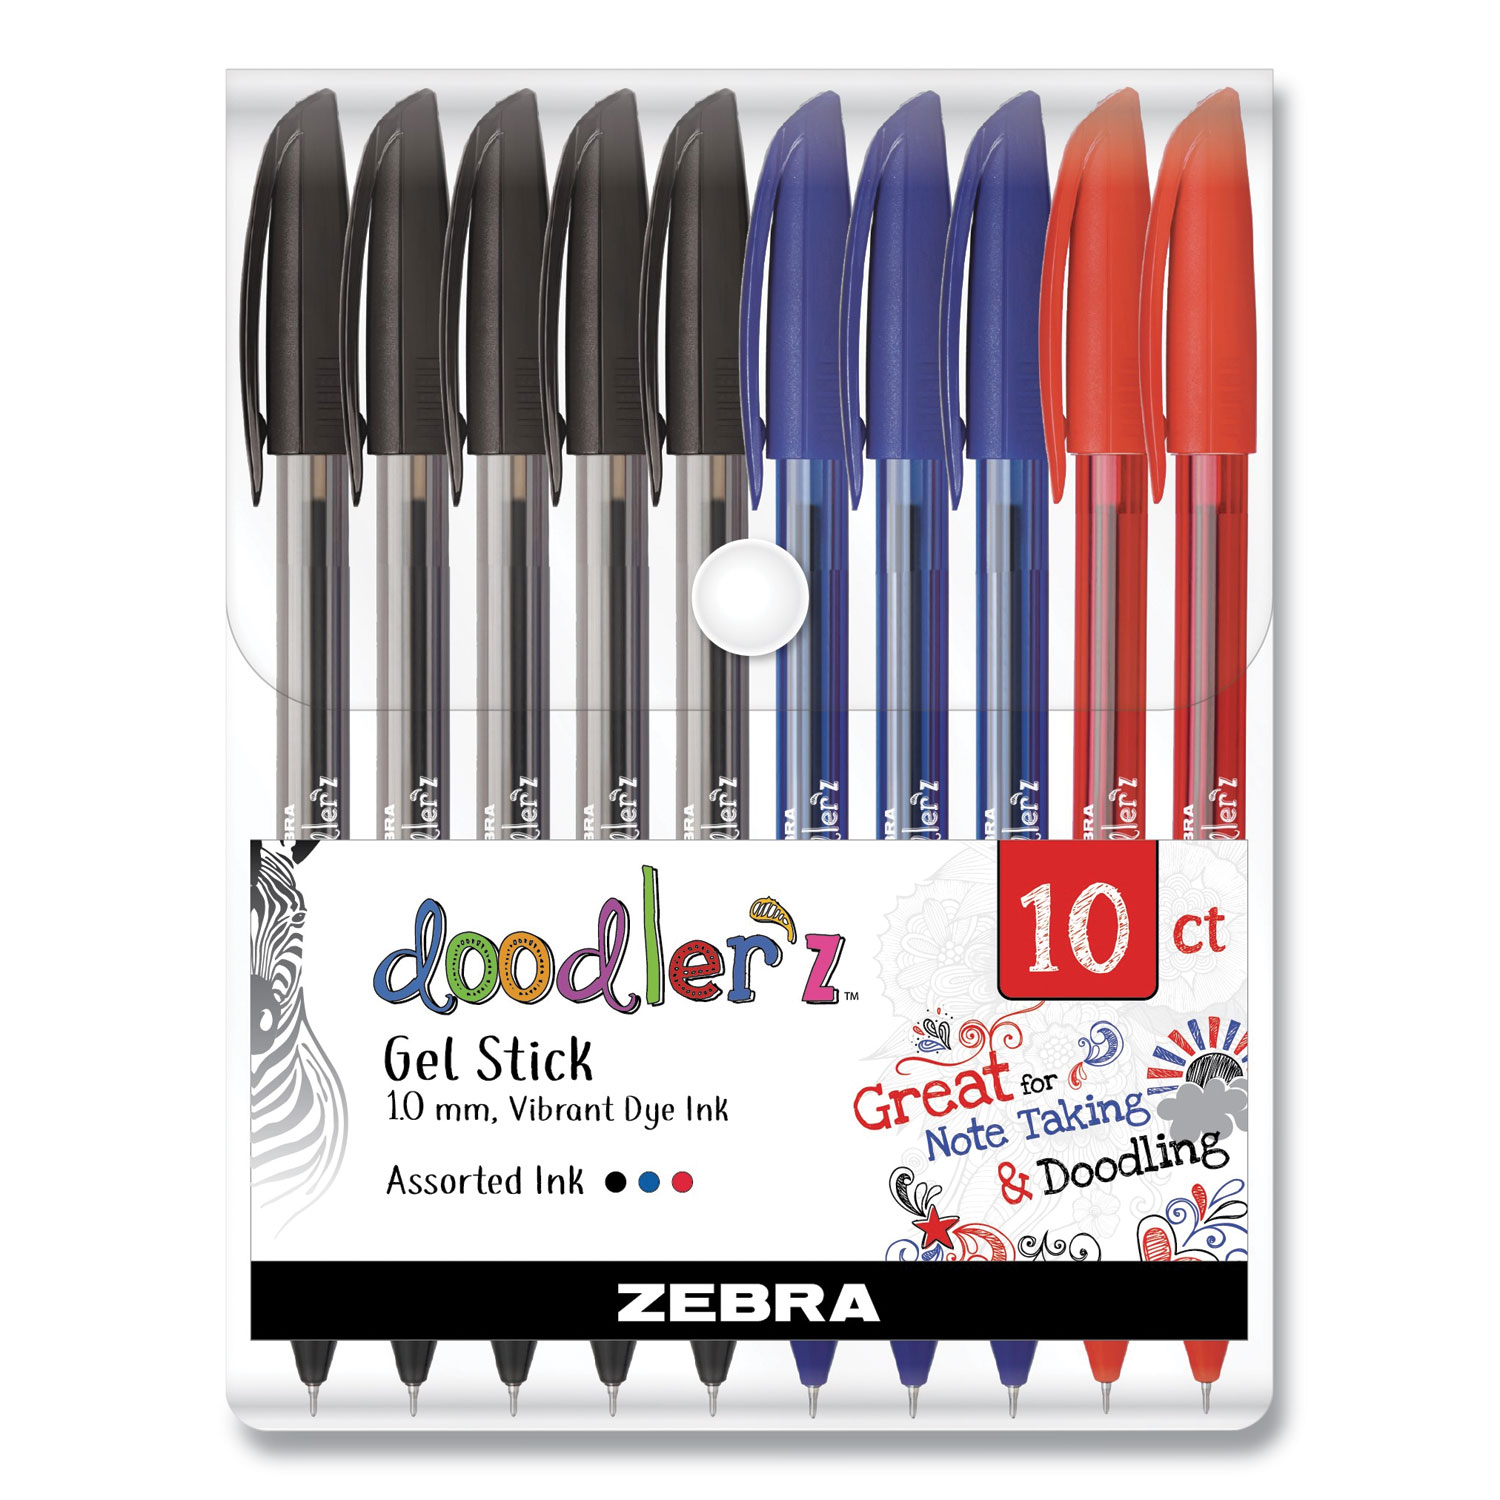 Zebra® Doodlerz Gel Stick Pen, Bold 1 mm, Assorted Ink, Assorted Barrels, 10/Pack